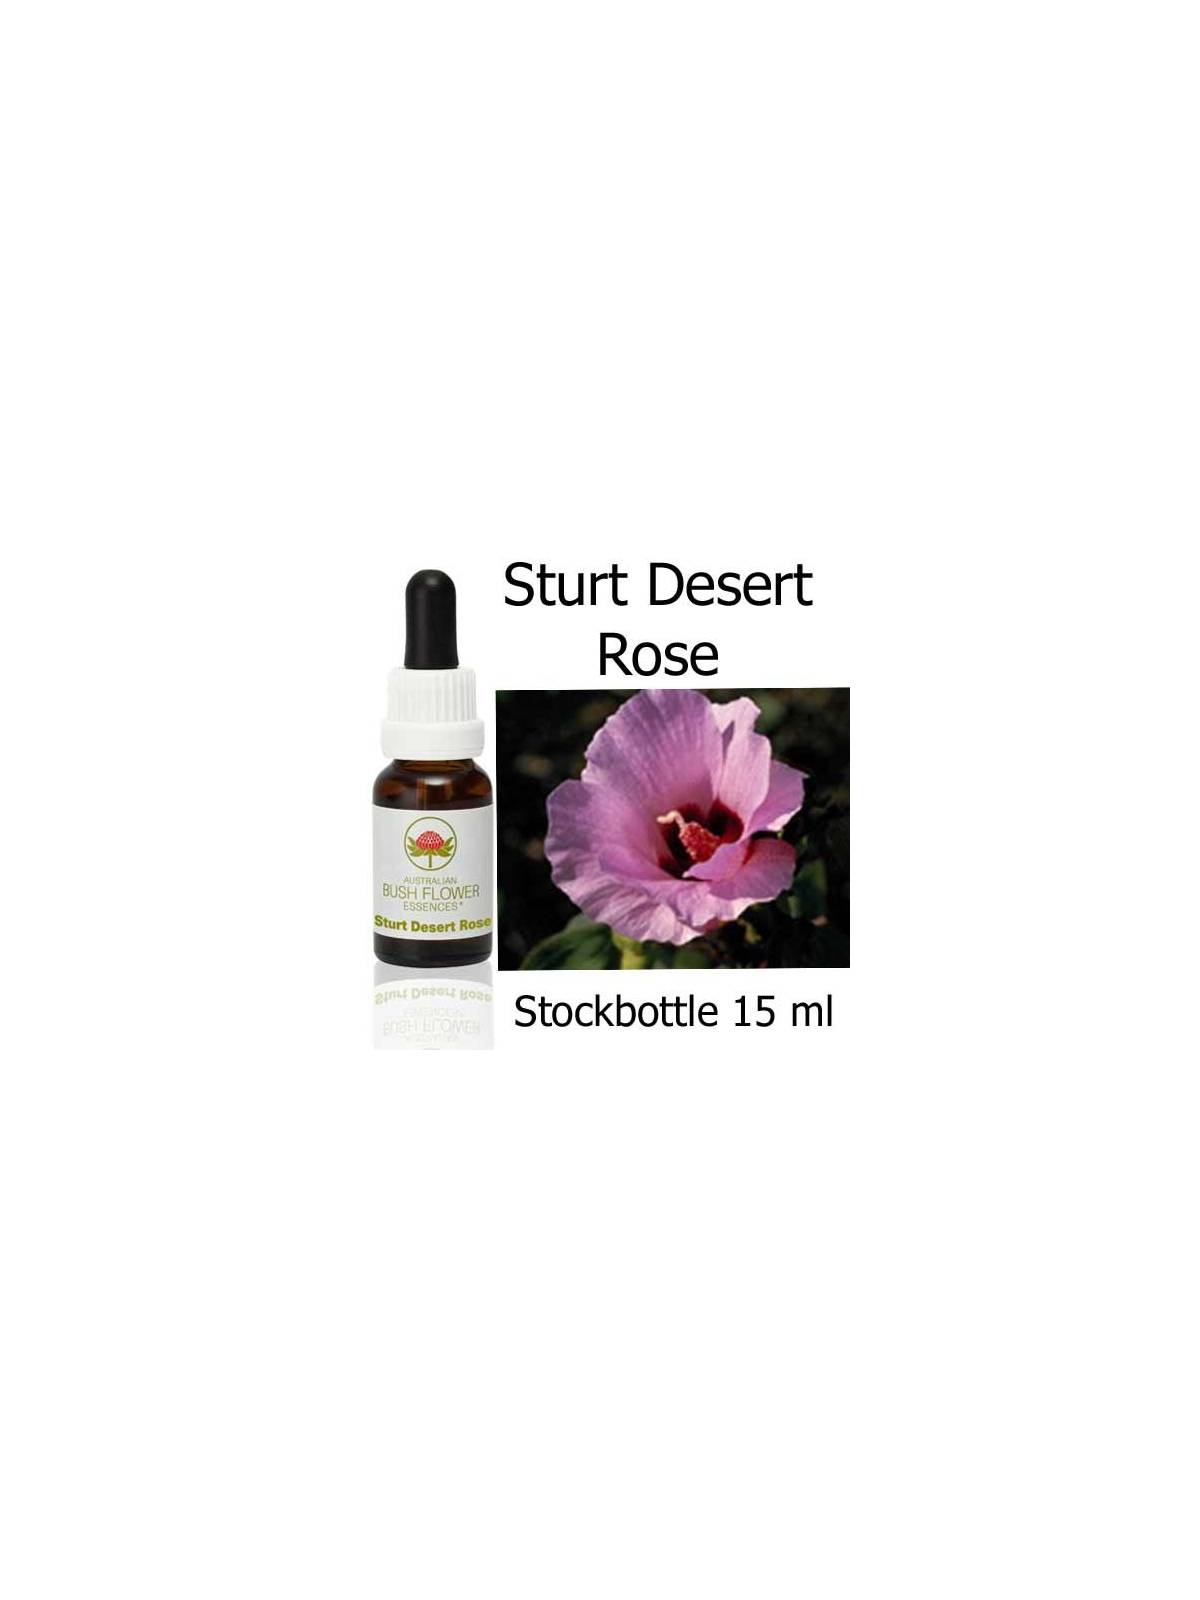 Fiori Australiani Sturt Desert Rose Australian Bush Flower Essences stockbottles